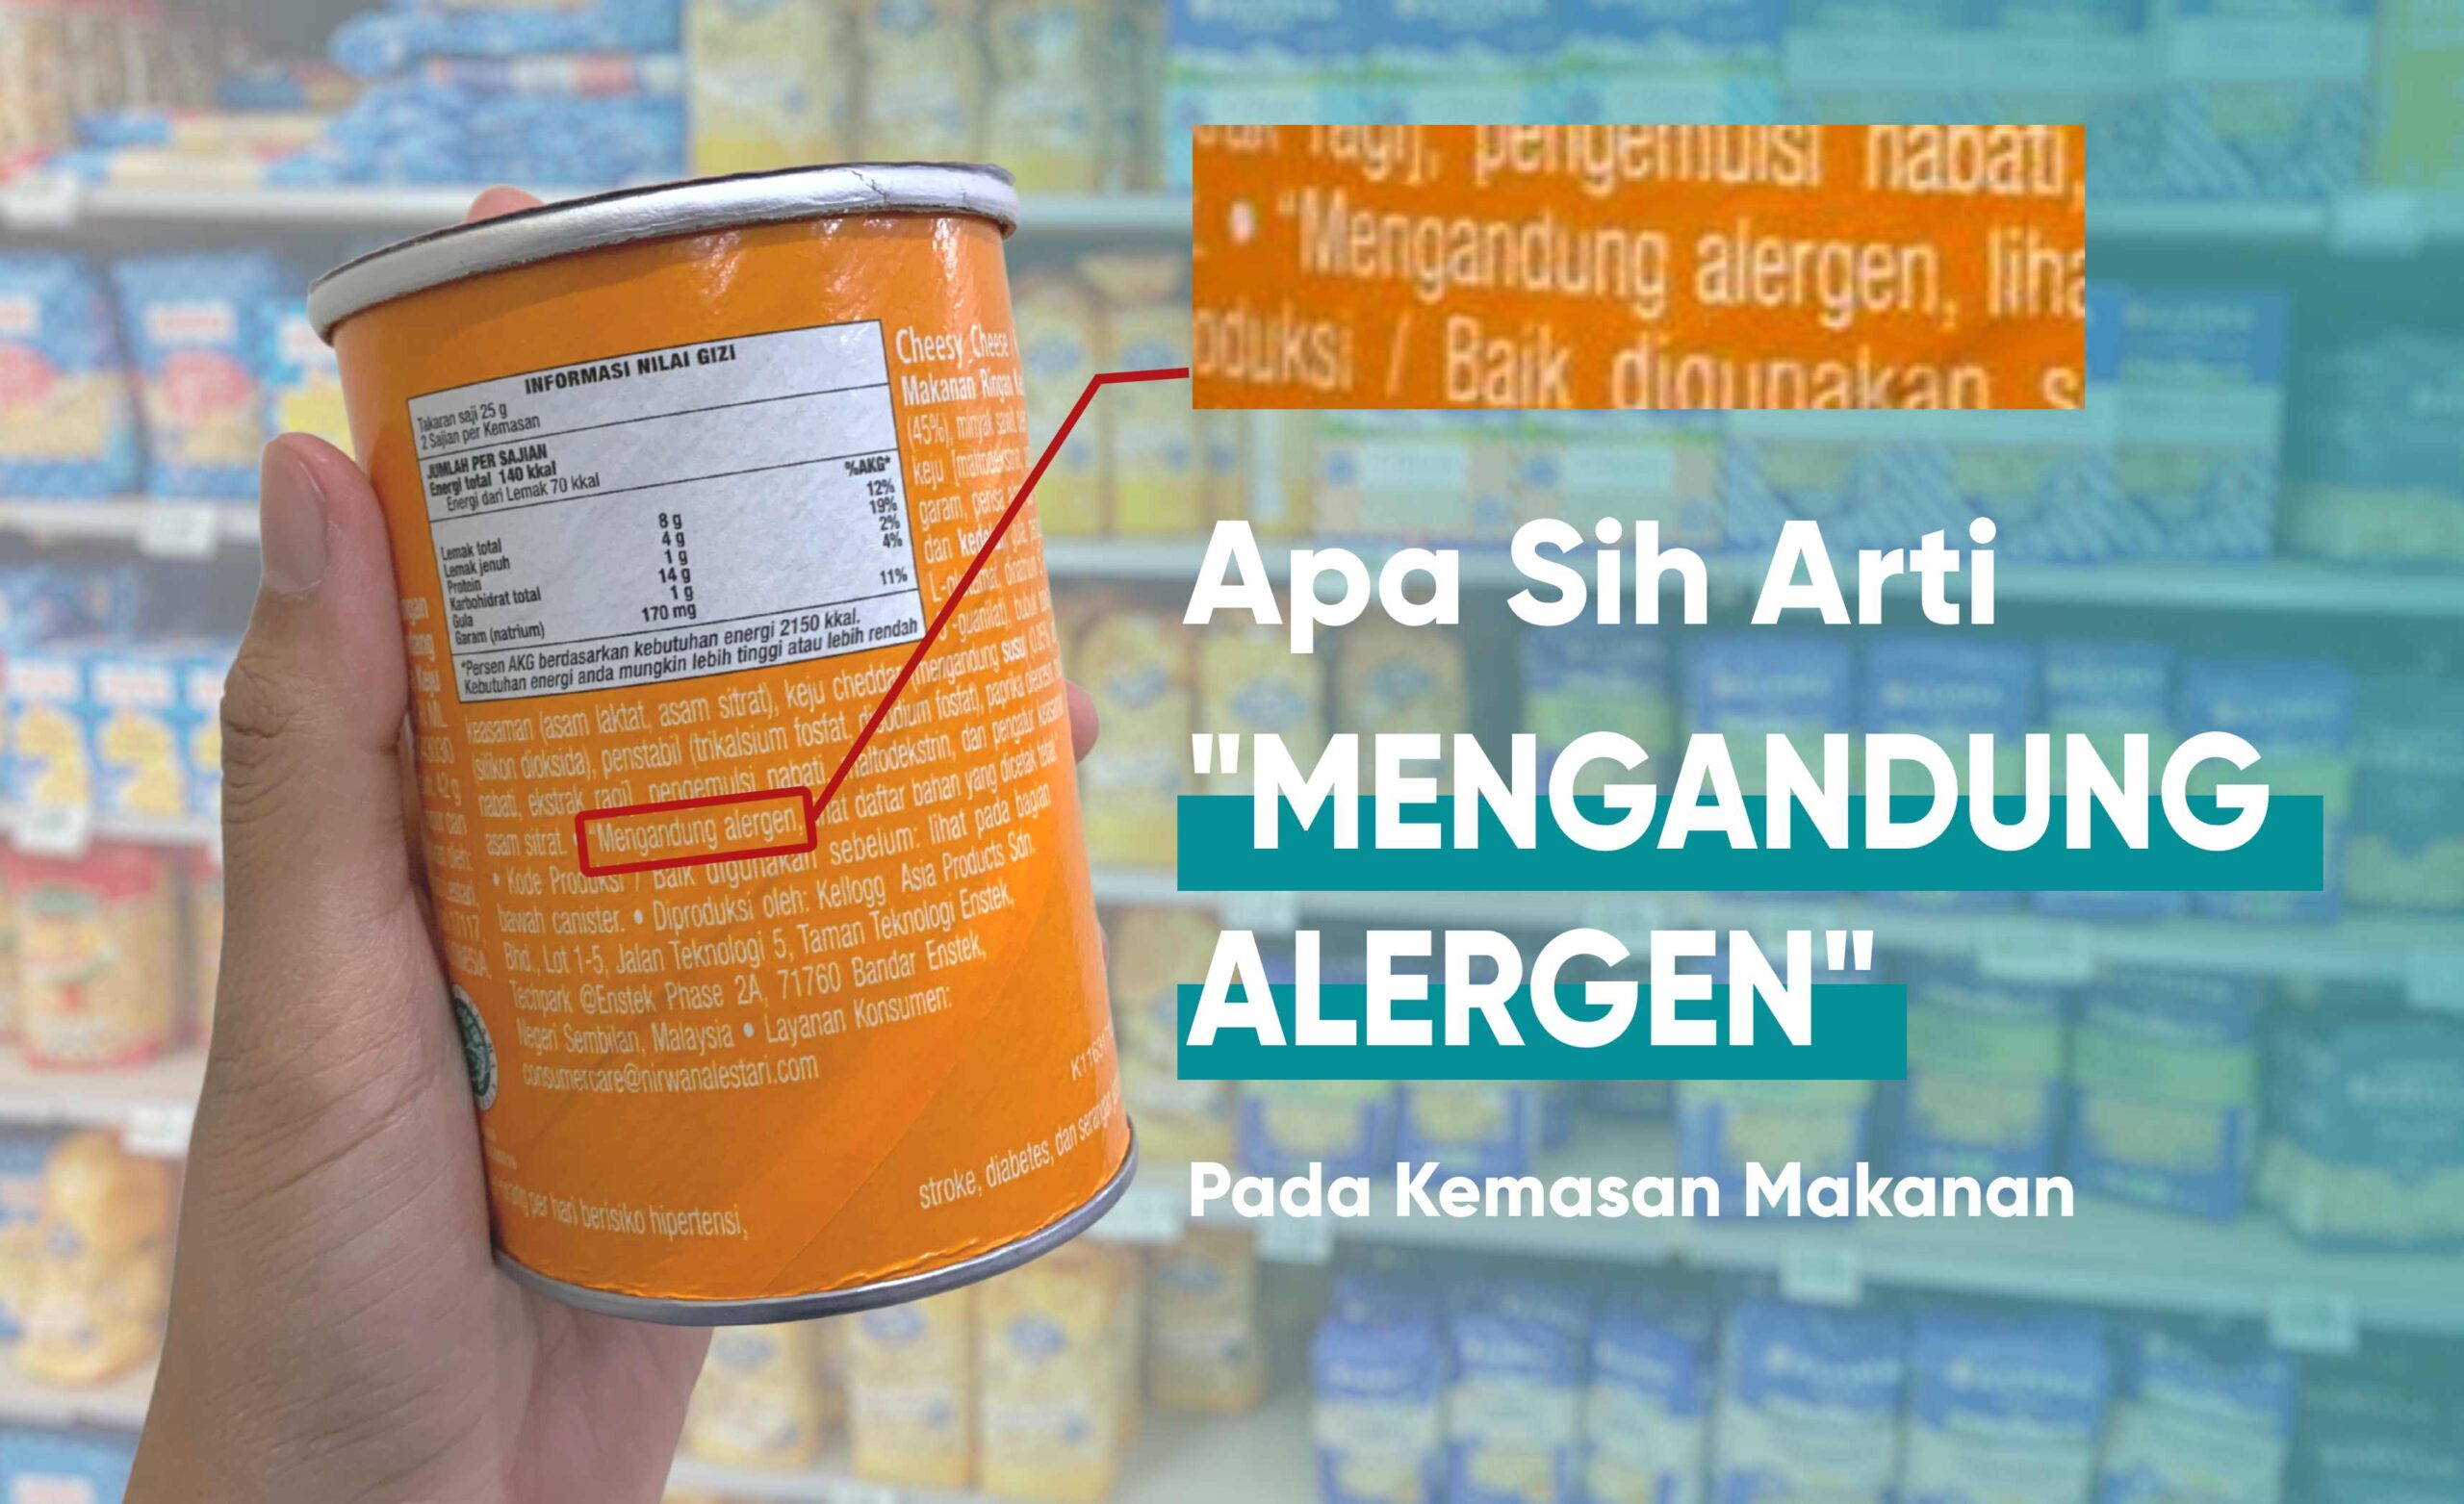 Arti Mengandung Alergen Pada Kemasan makanan yang ada di supermarket